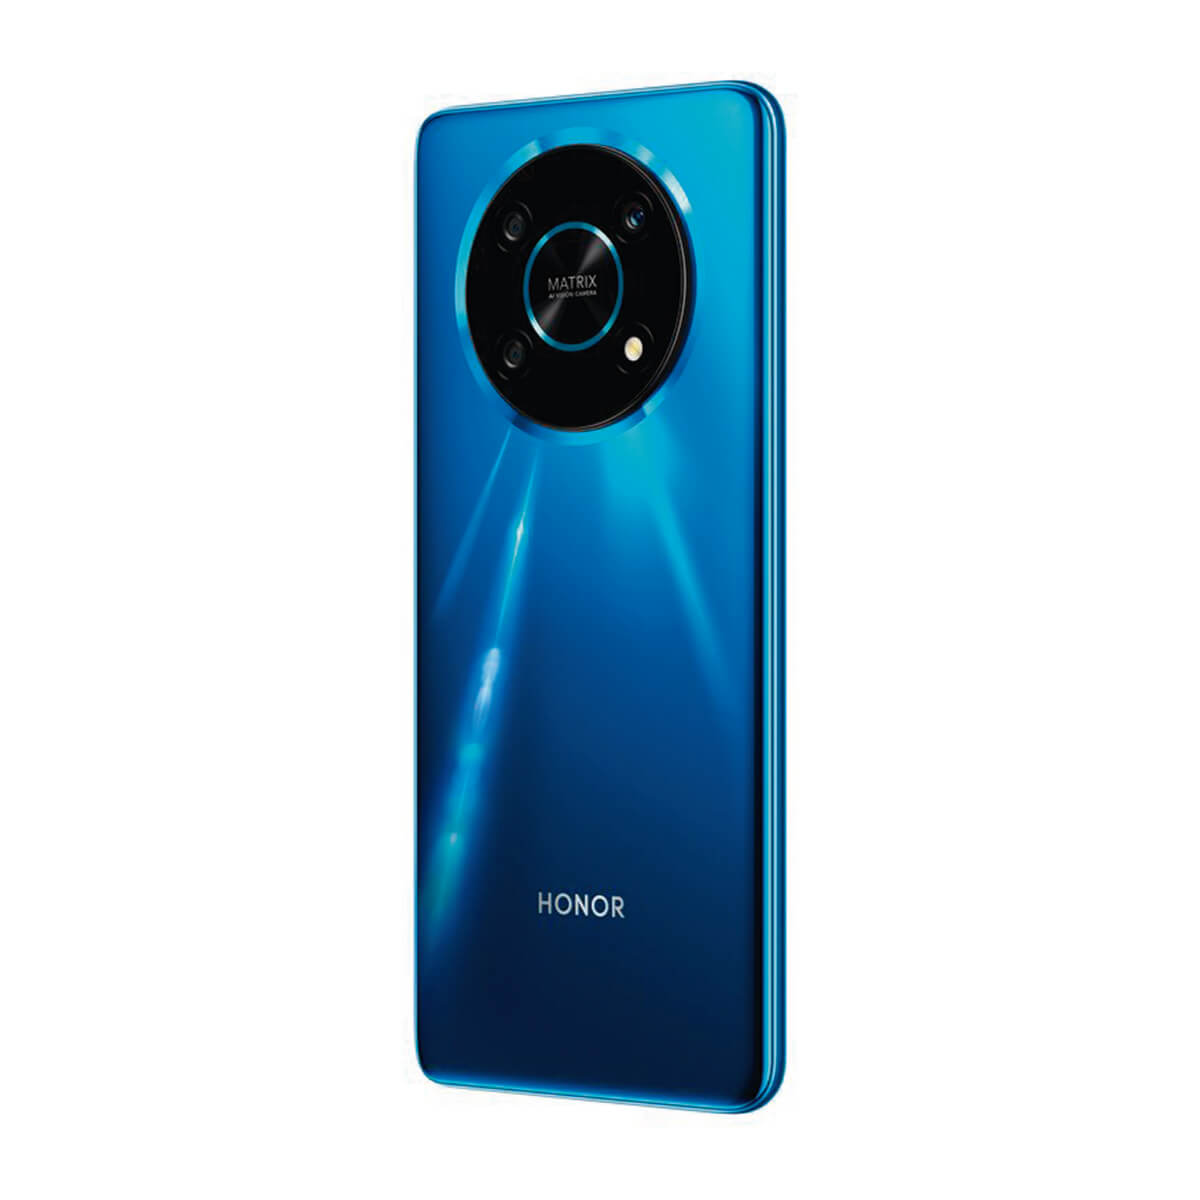 Dual SIM ANY-NX1 Blau 128 GB HONOR